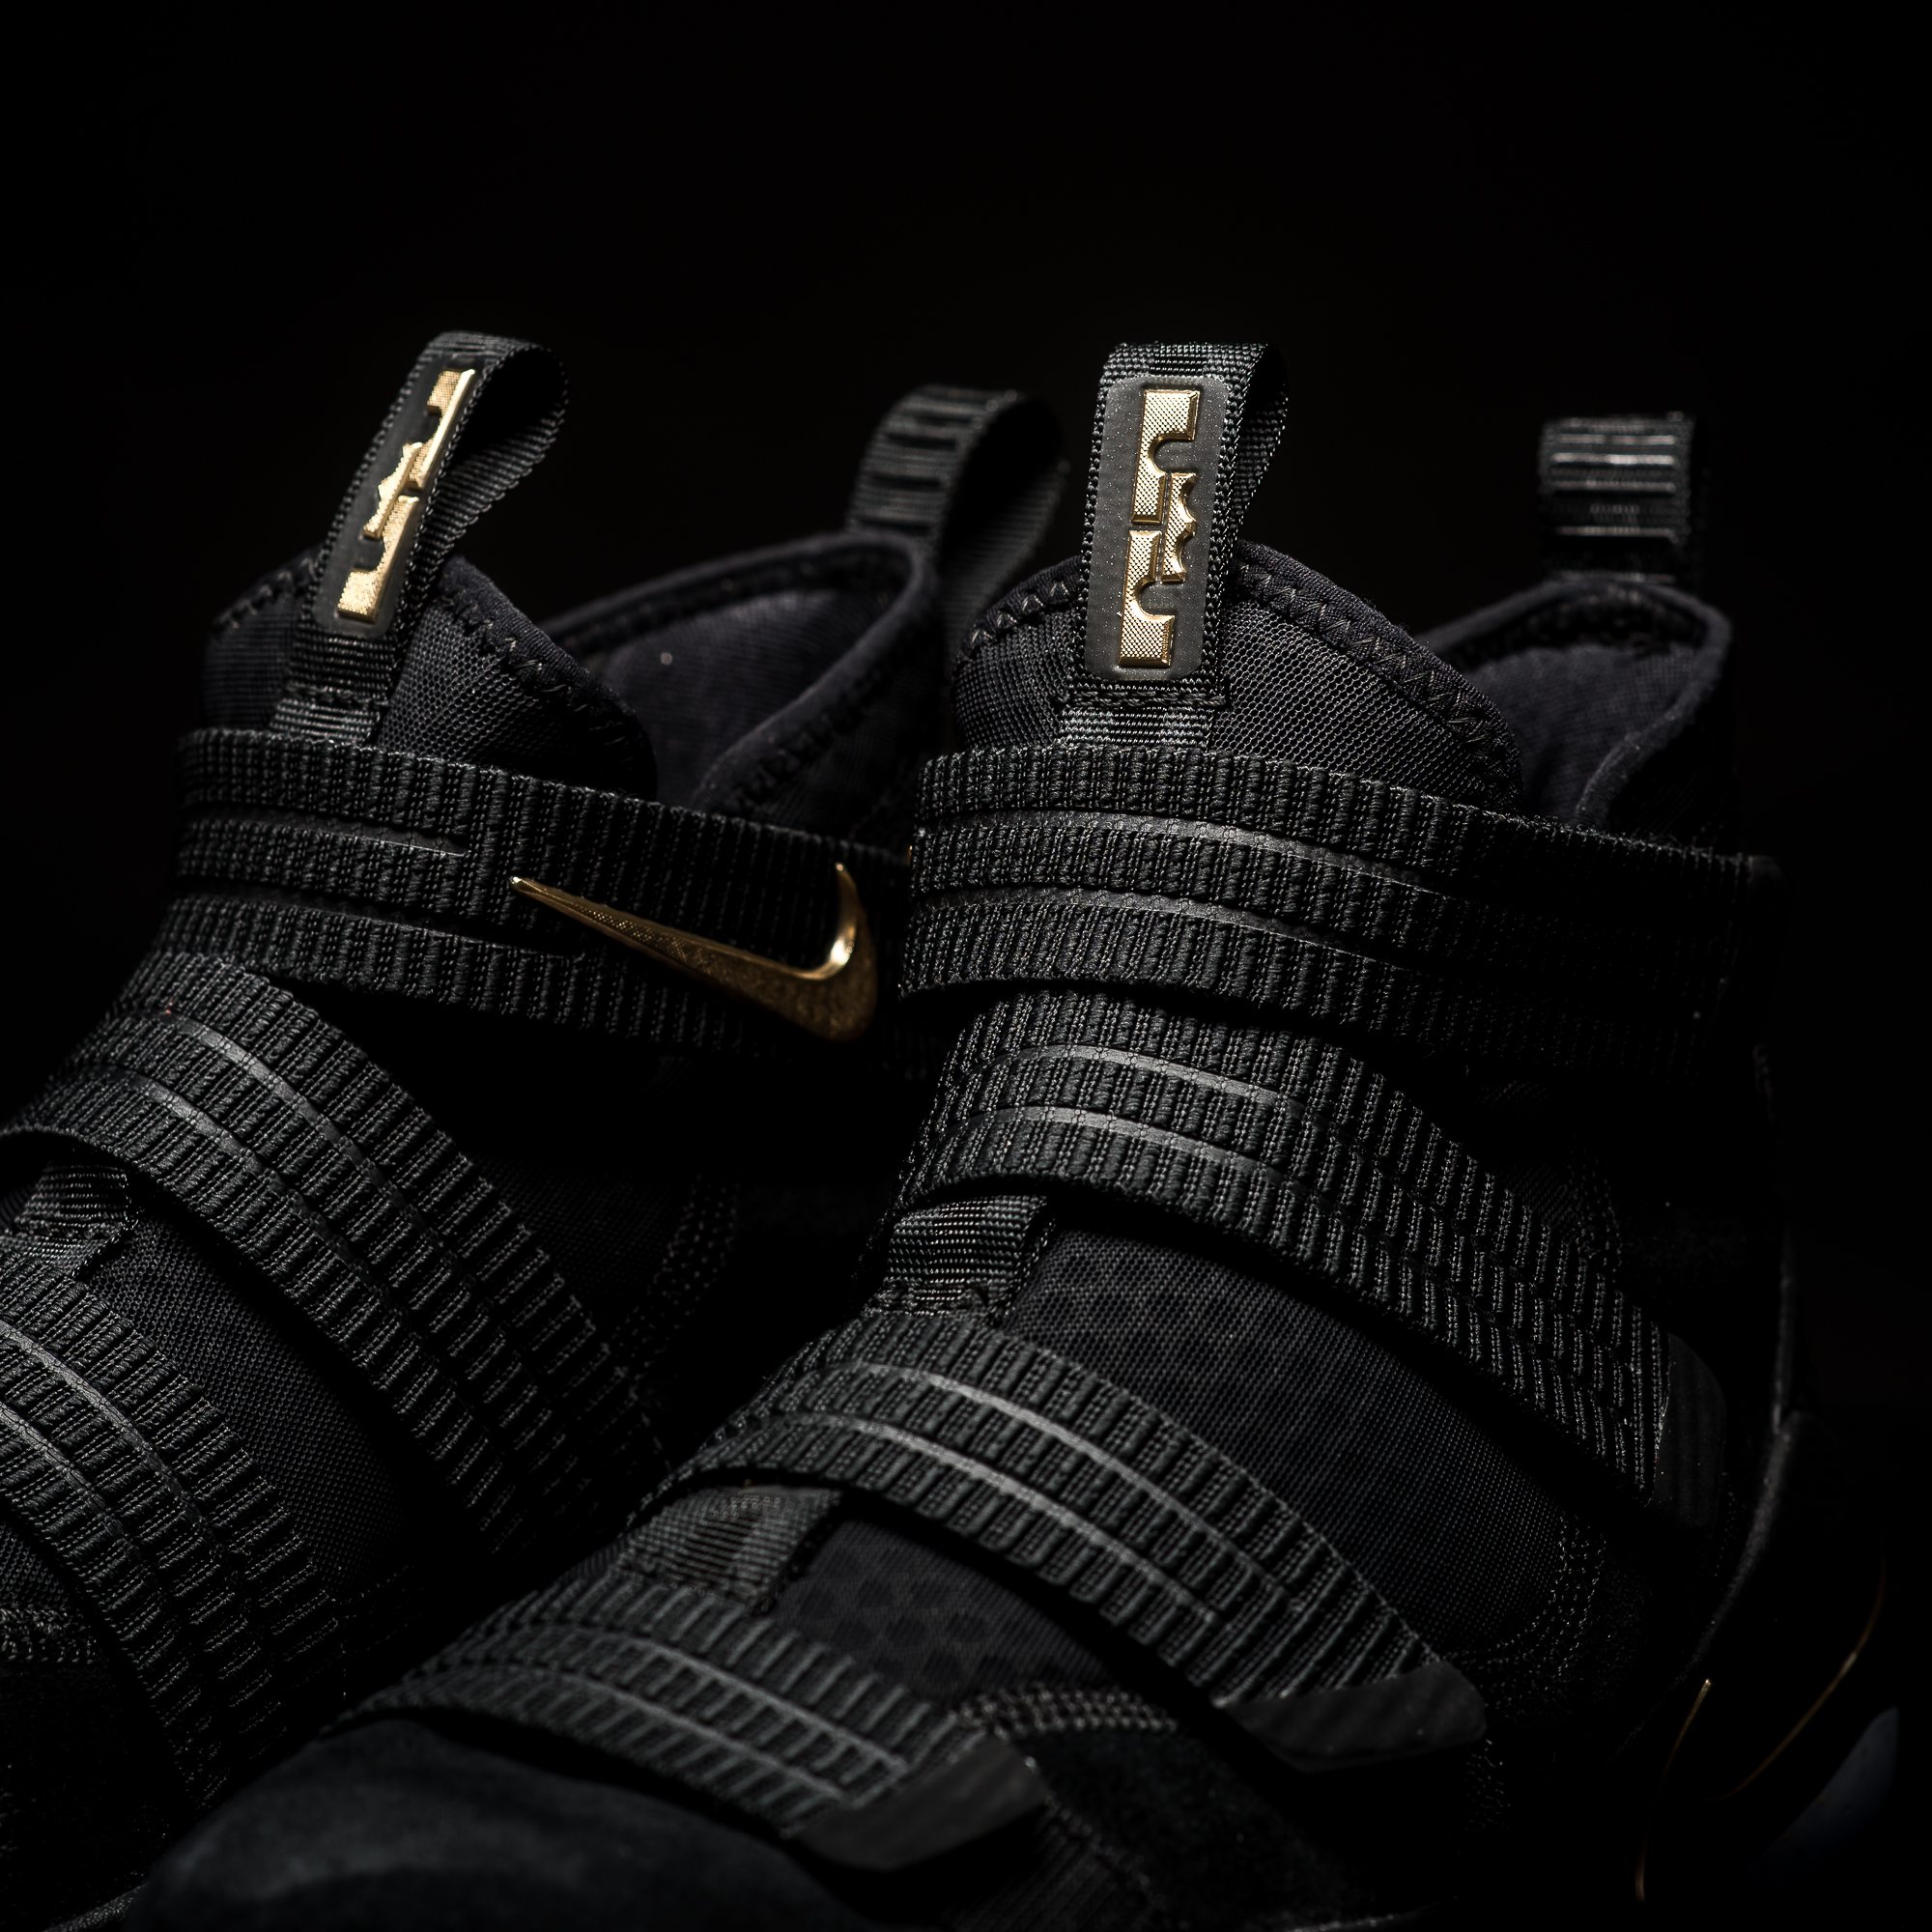 Nike LeBron Soldier 11 SFG Black/Metallic Gold